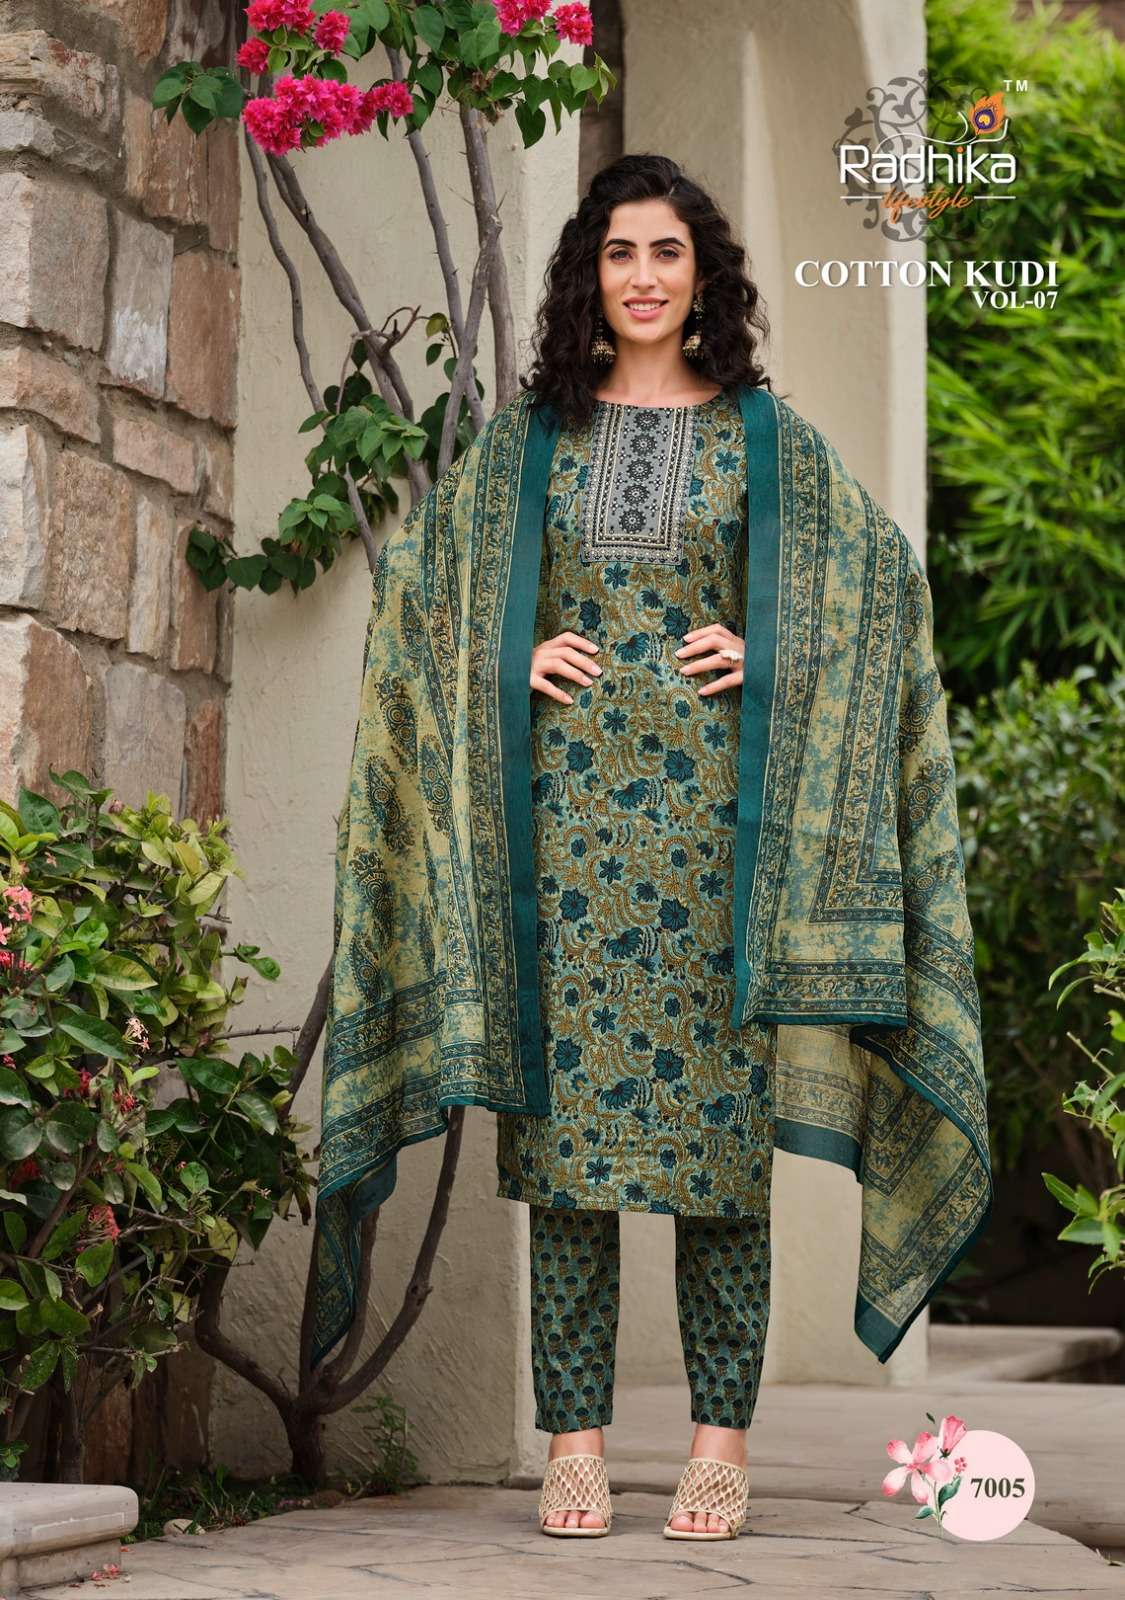 radhika lifestyle cotton kudi vol-7 7001-7008 series trendy look designer kurtis catalogue manufacturer surat